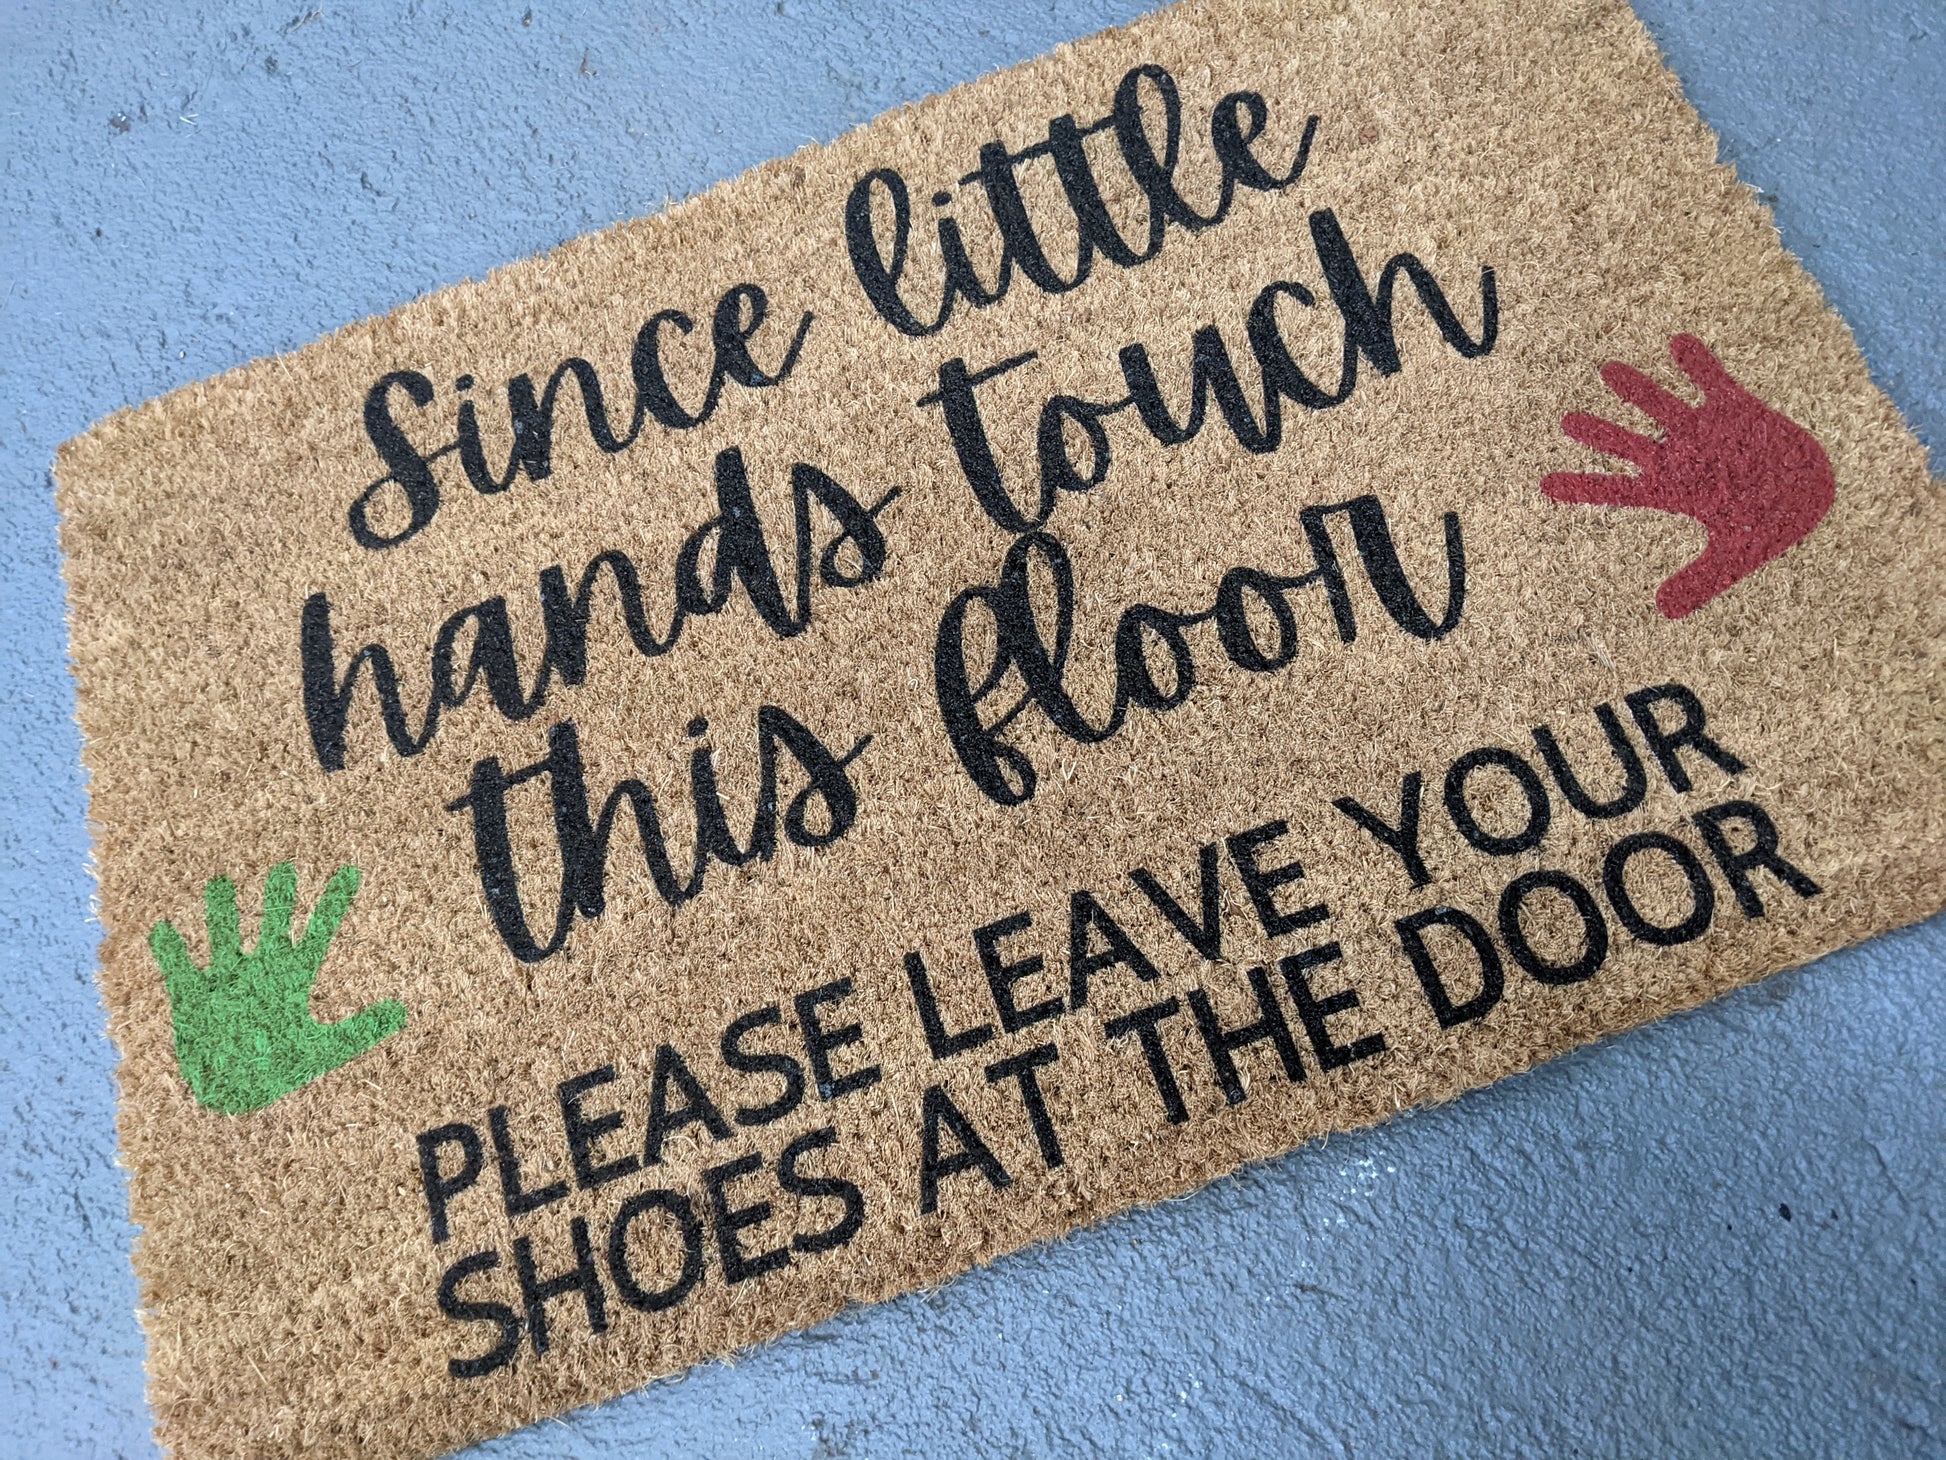 Since little hands touch this floor doormat